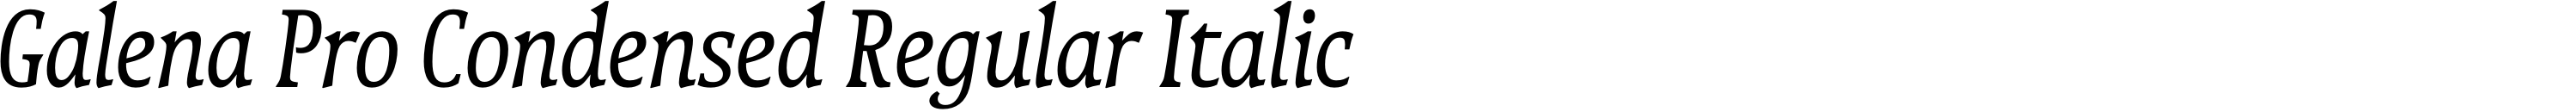 Galena Pro Condensed Regular Italic